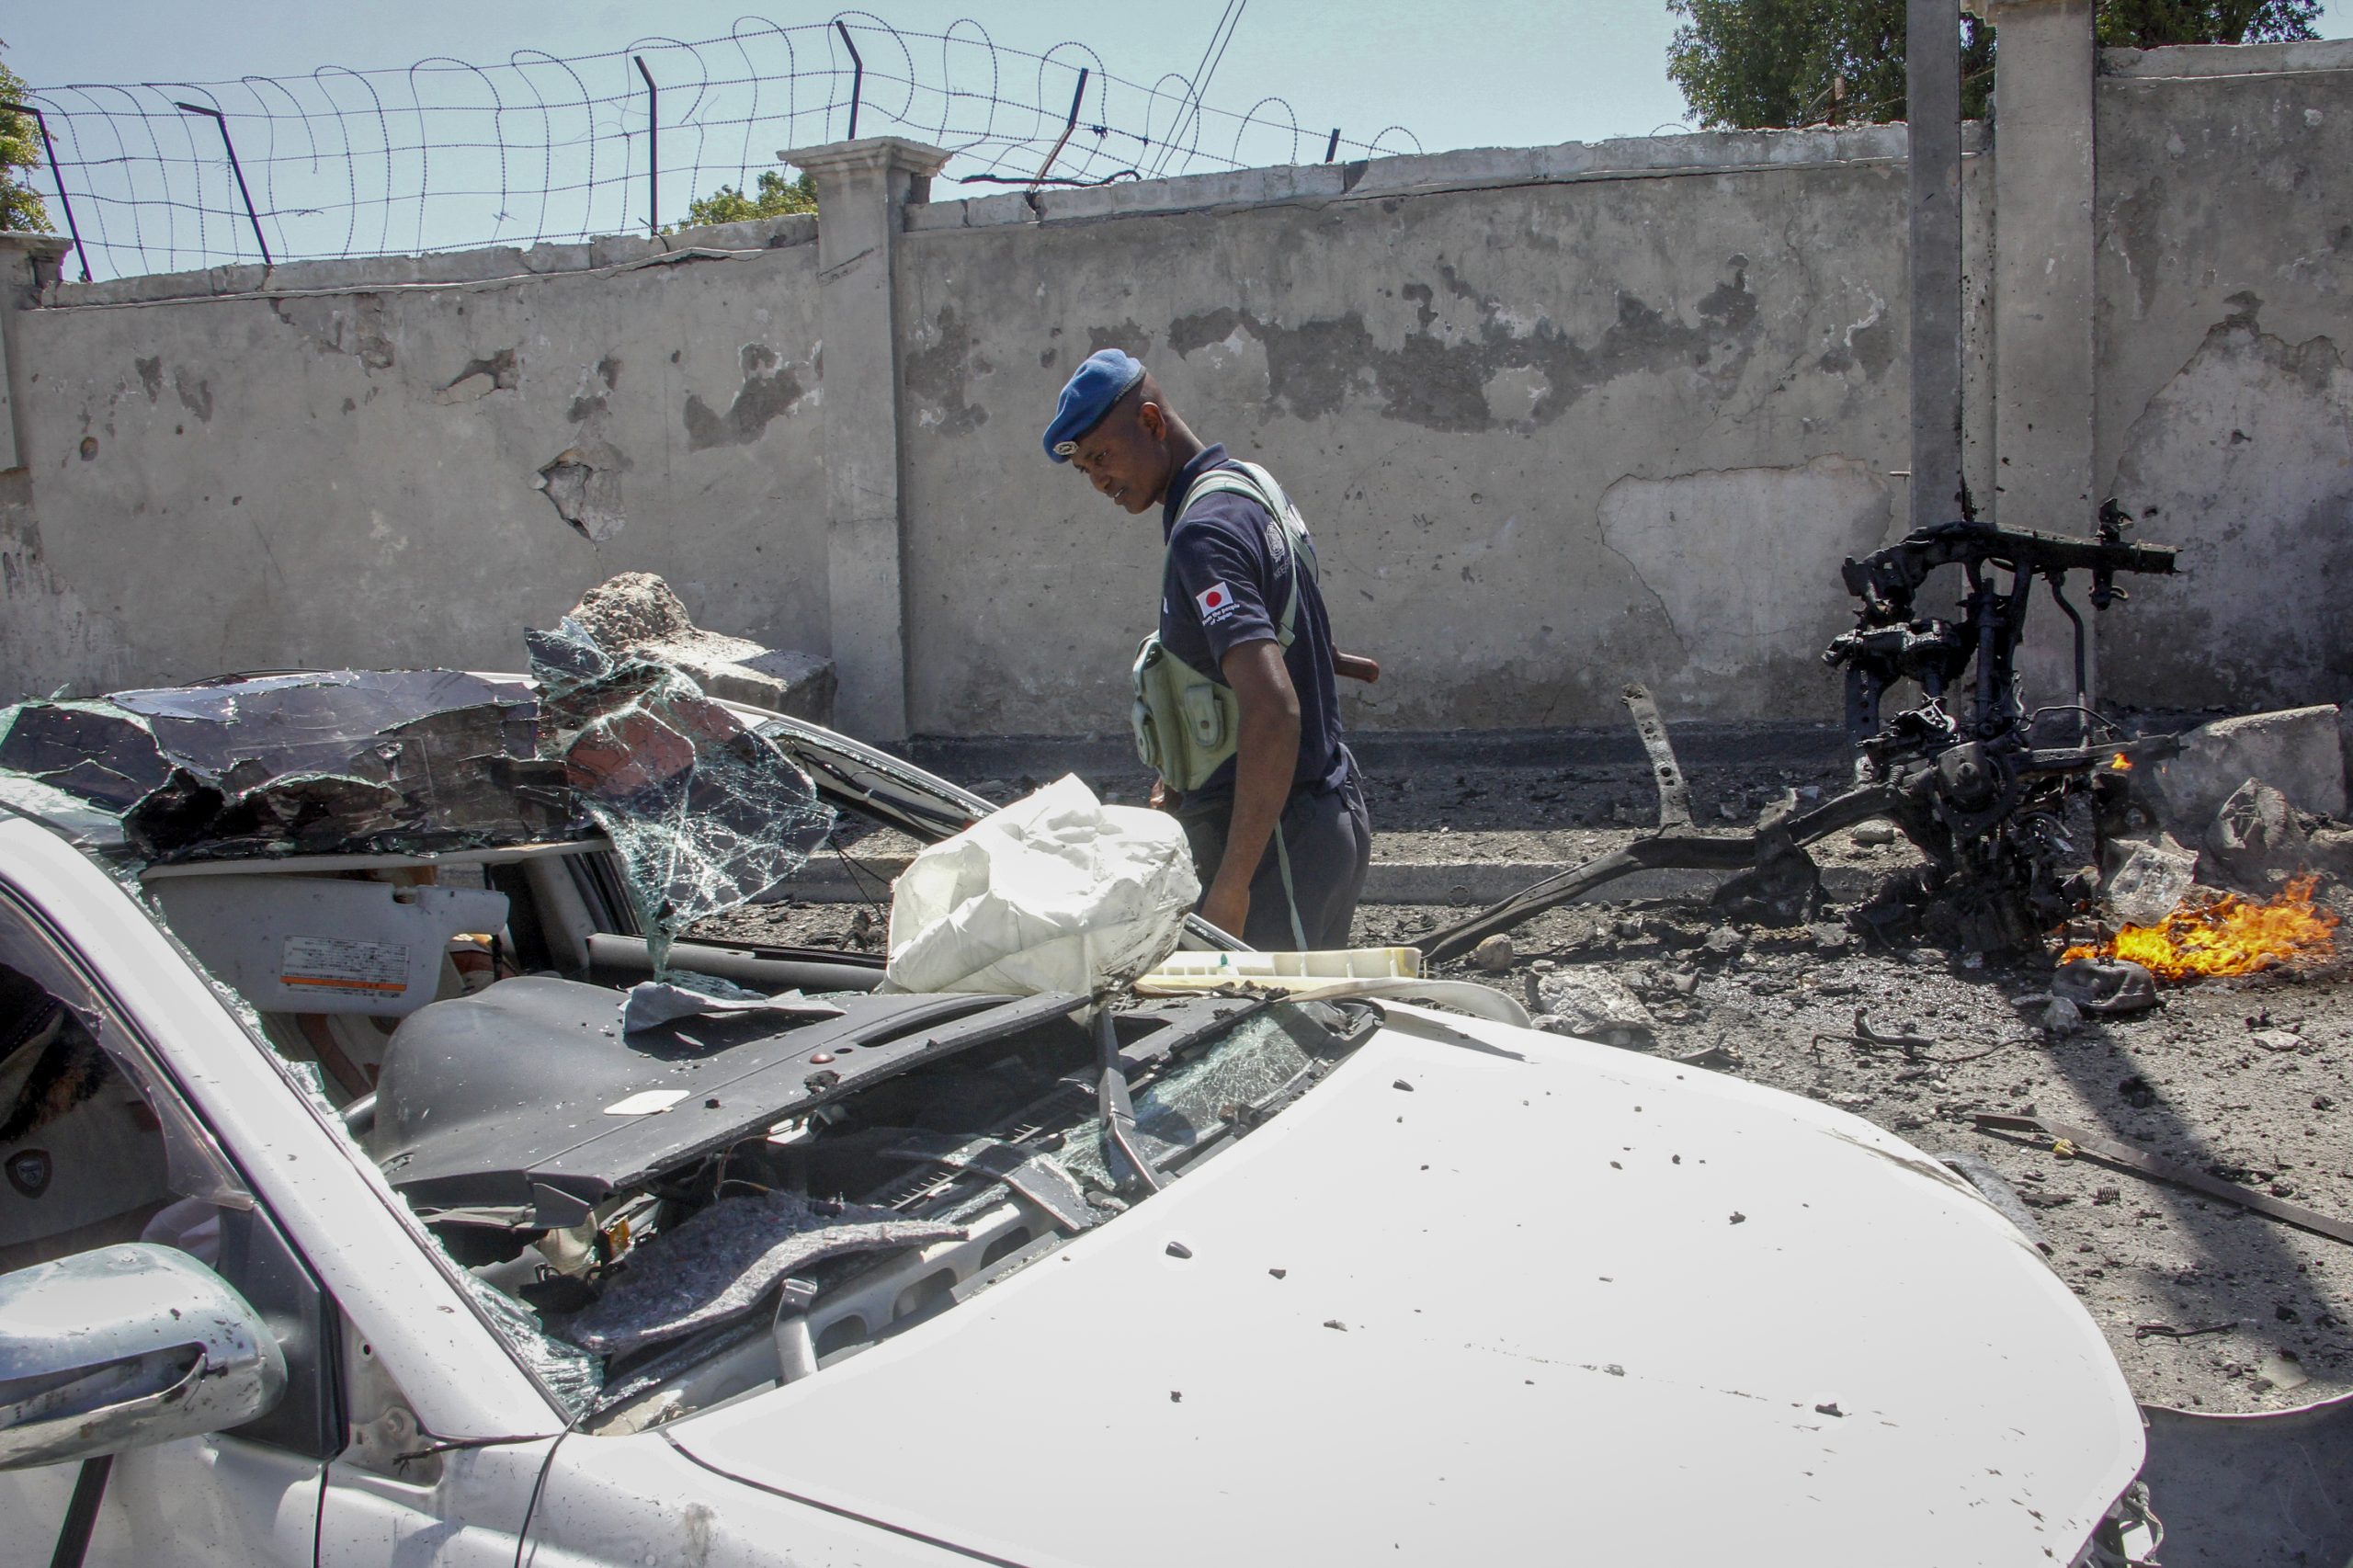 索马里首都爆炸至少8死9伤 极端组织“青年党”宣称负责